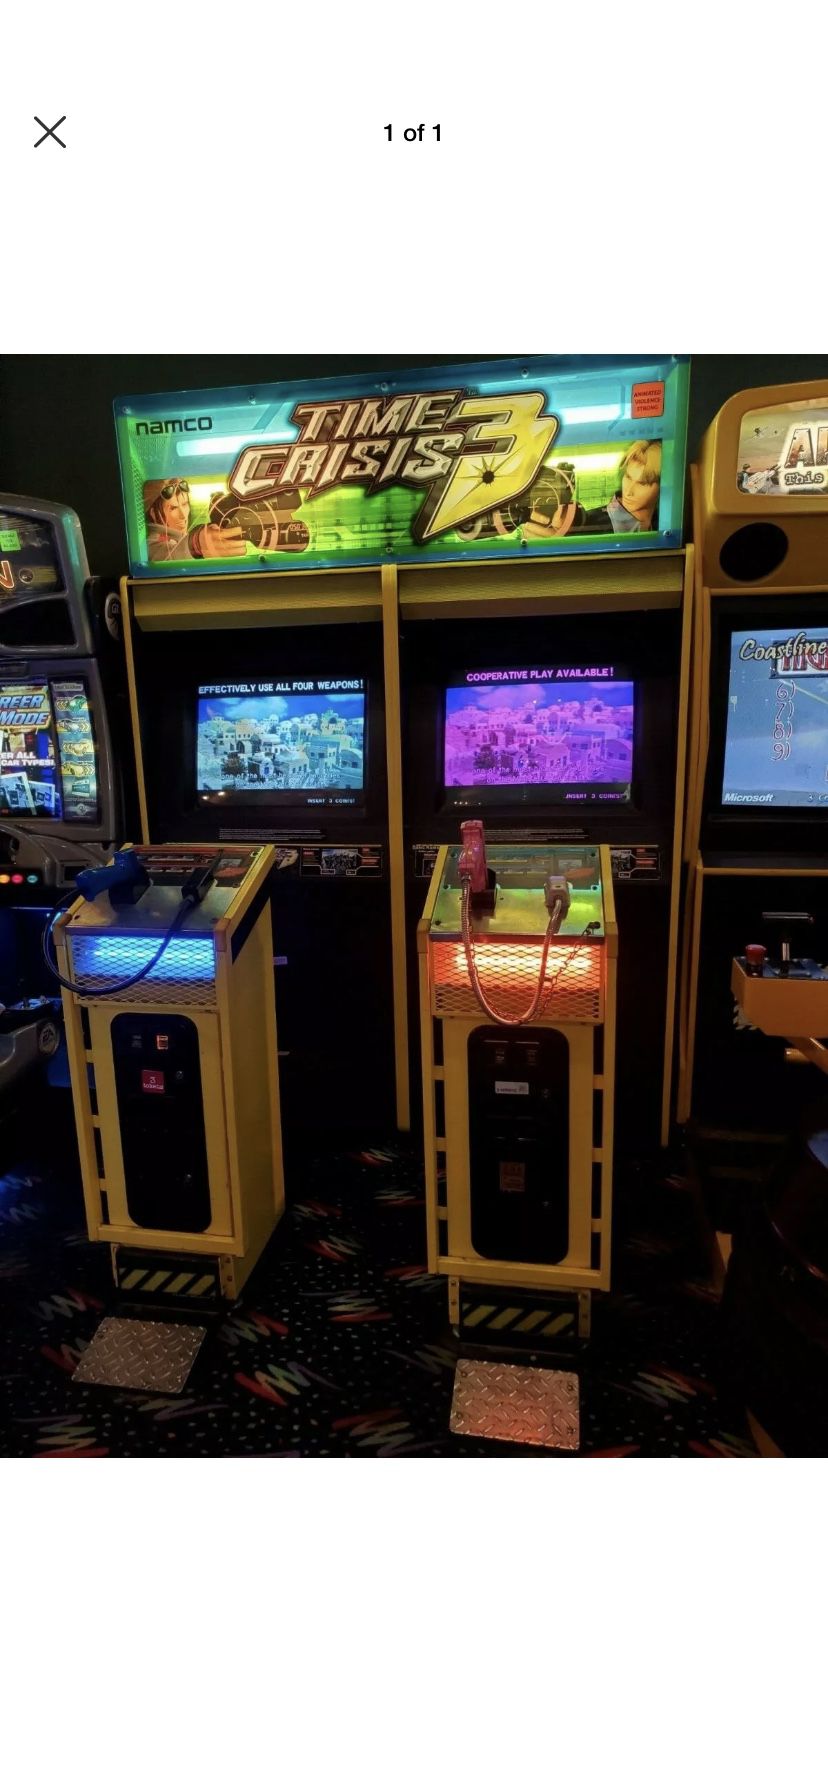 Time Crisis 3 arcade game